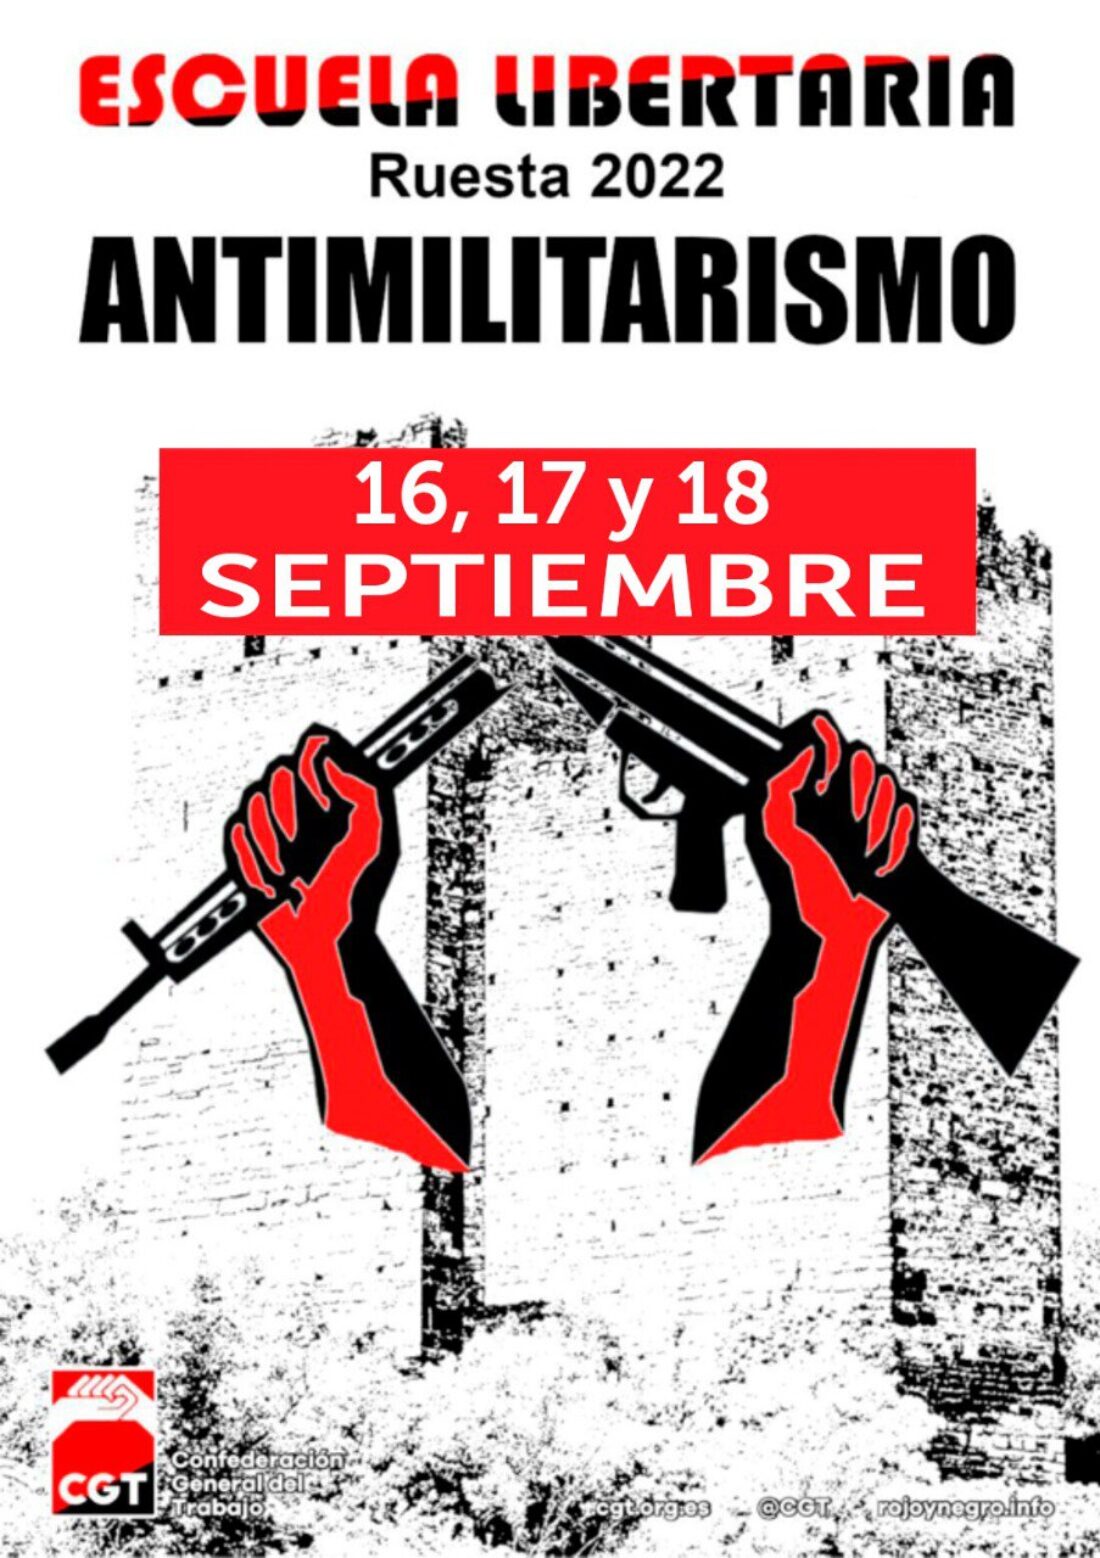 Escola Llibertària Ruesta Antimilitarisme sept 2022